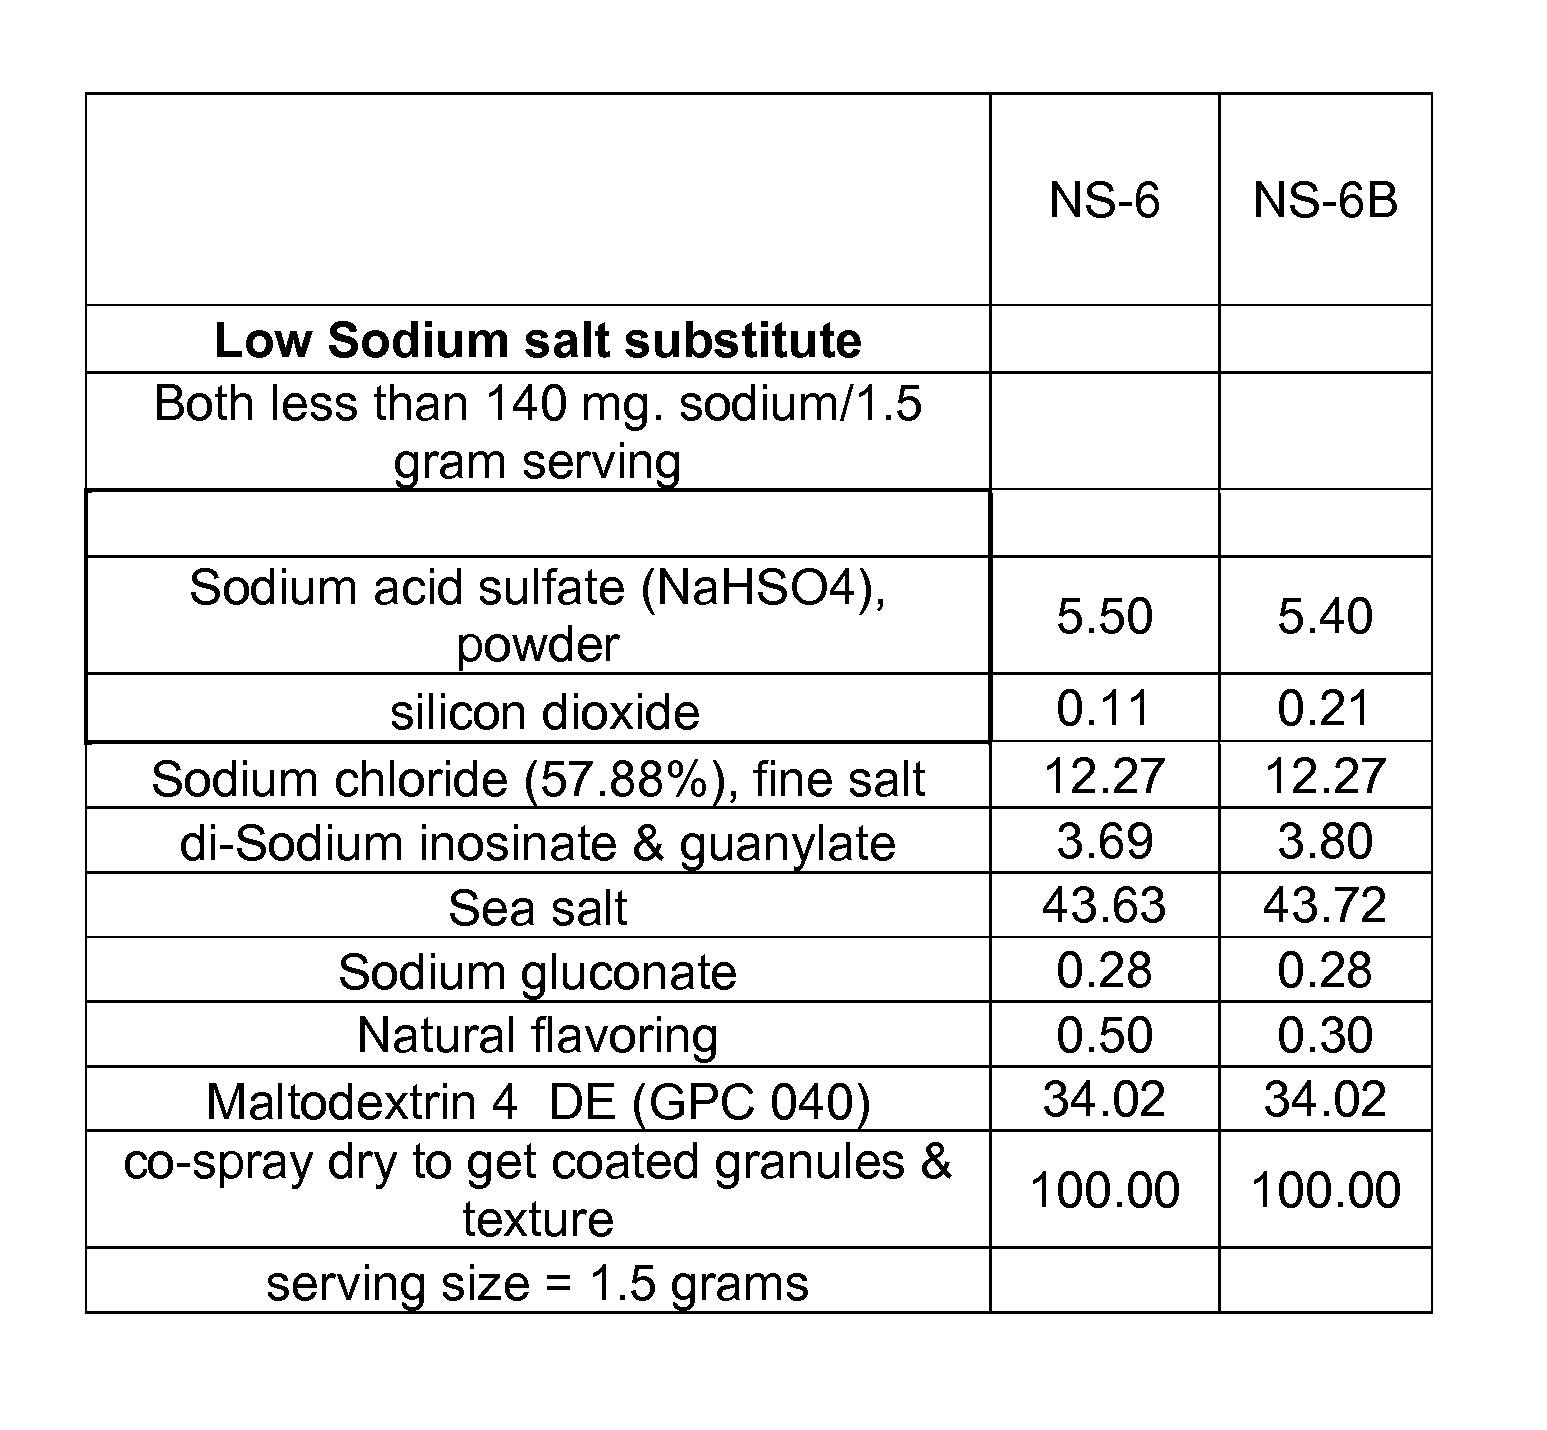 Low sodium salt substitute compositions